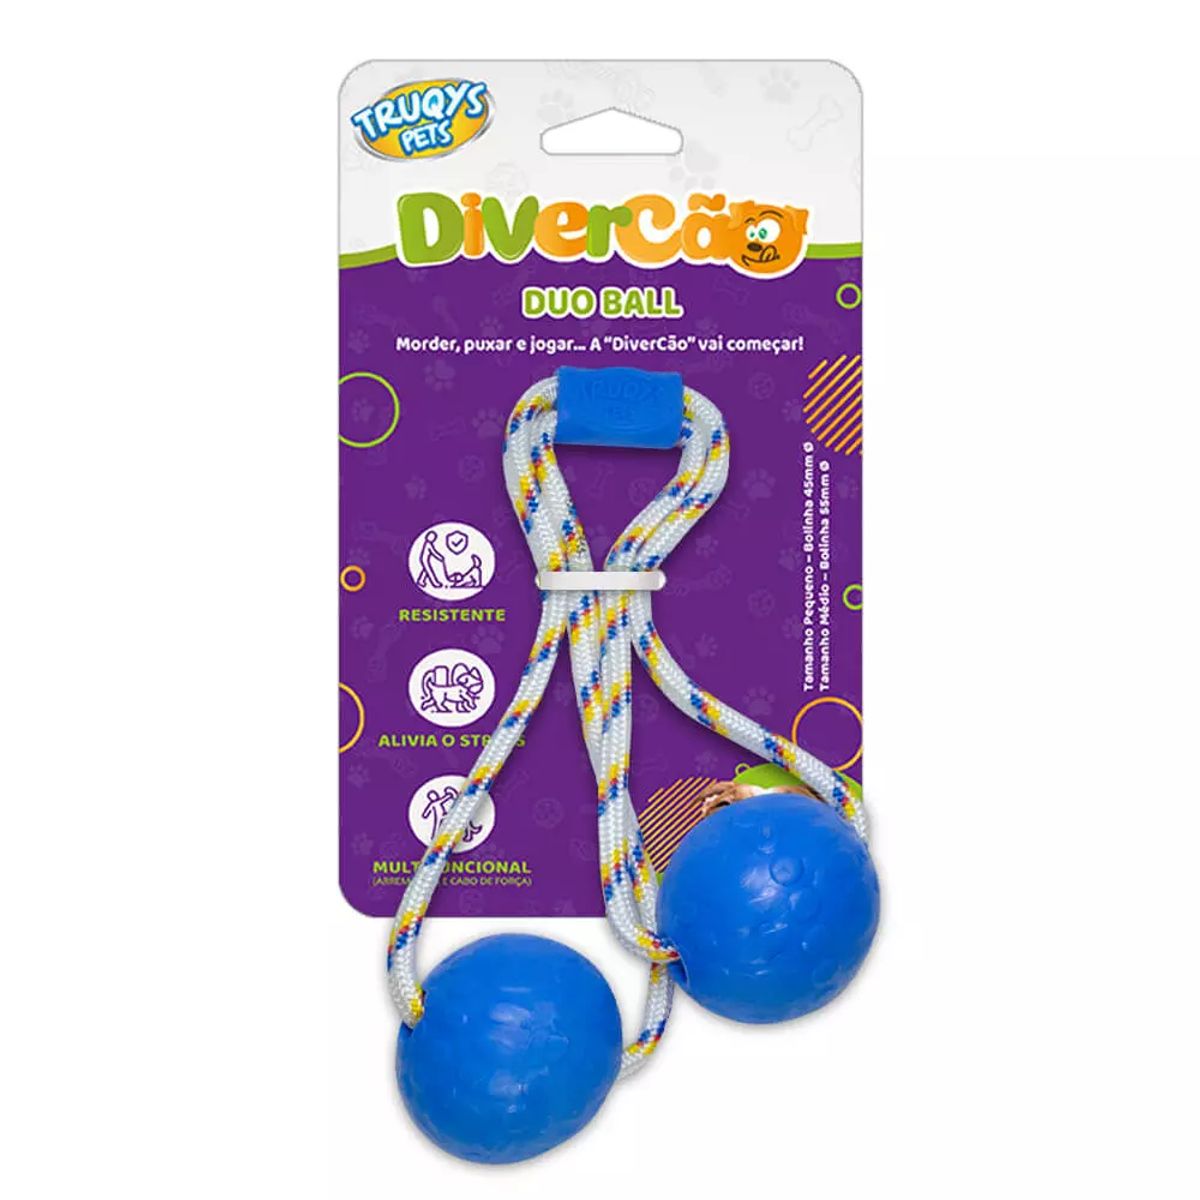 Brinquedo Divercão Truqys Pets Duo Ball Azul Unidade